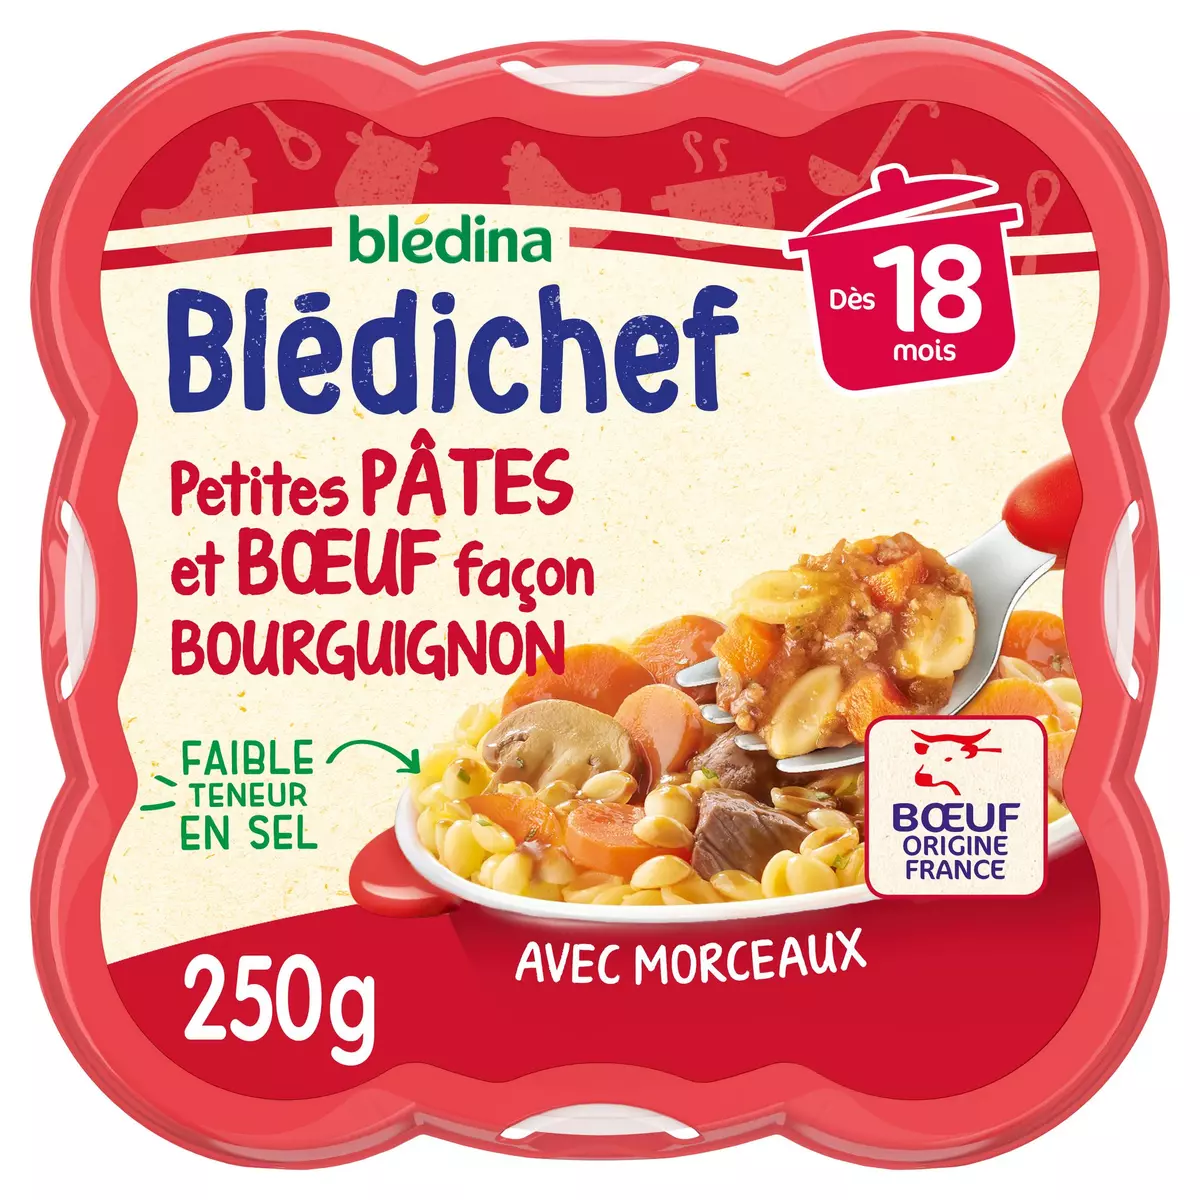 BLEDINA Blédichef assiette pâtes et boeuf bourguignon dès 18 mois 250g